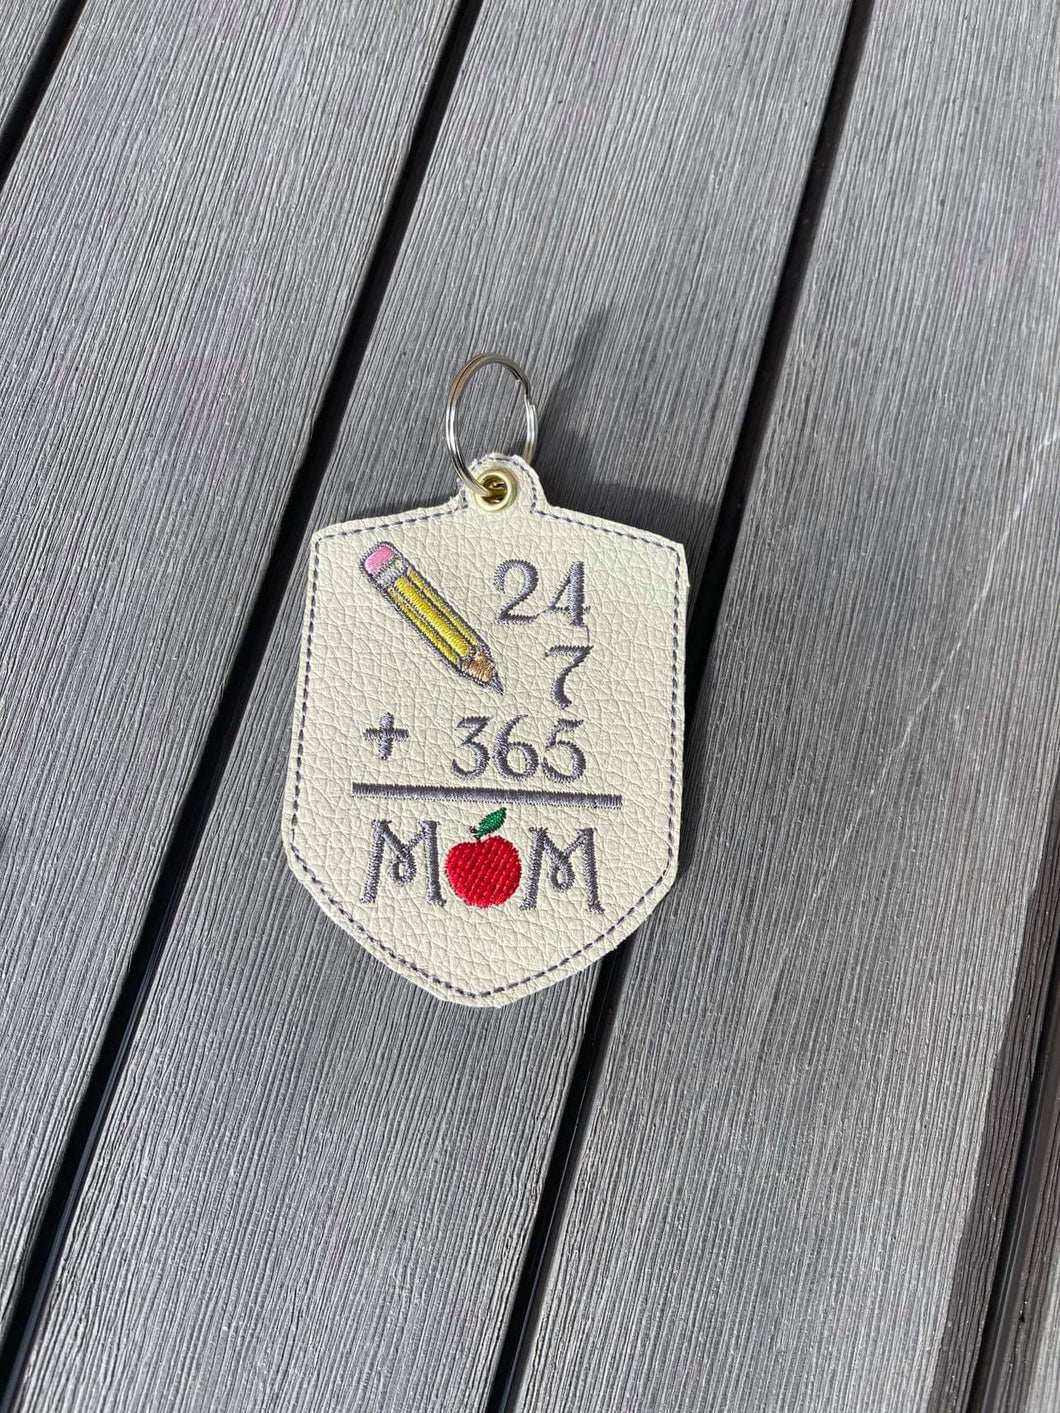 Mom 24 7 365 days 4x4 Keyfob - ITH Digital Embroidery Design